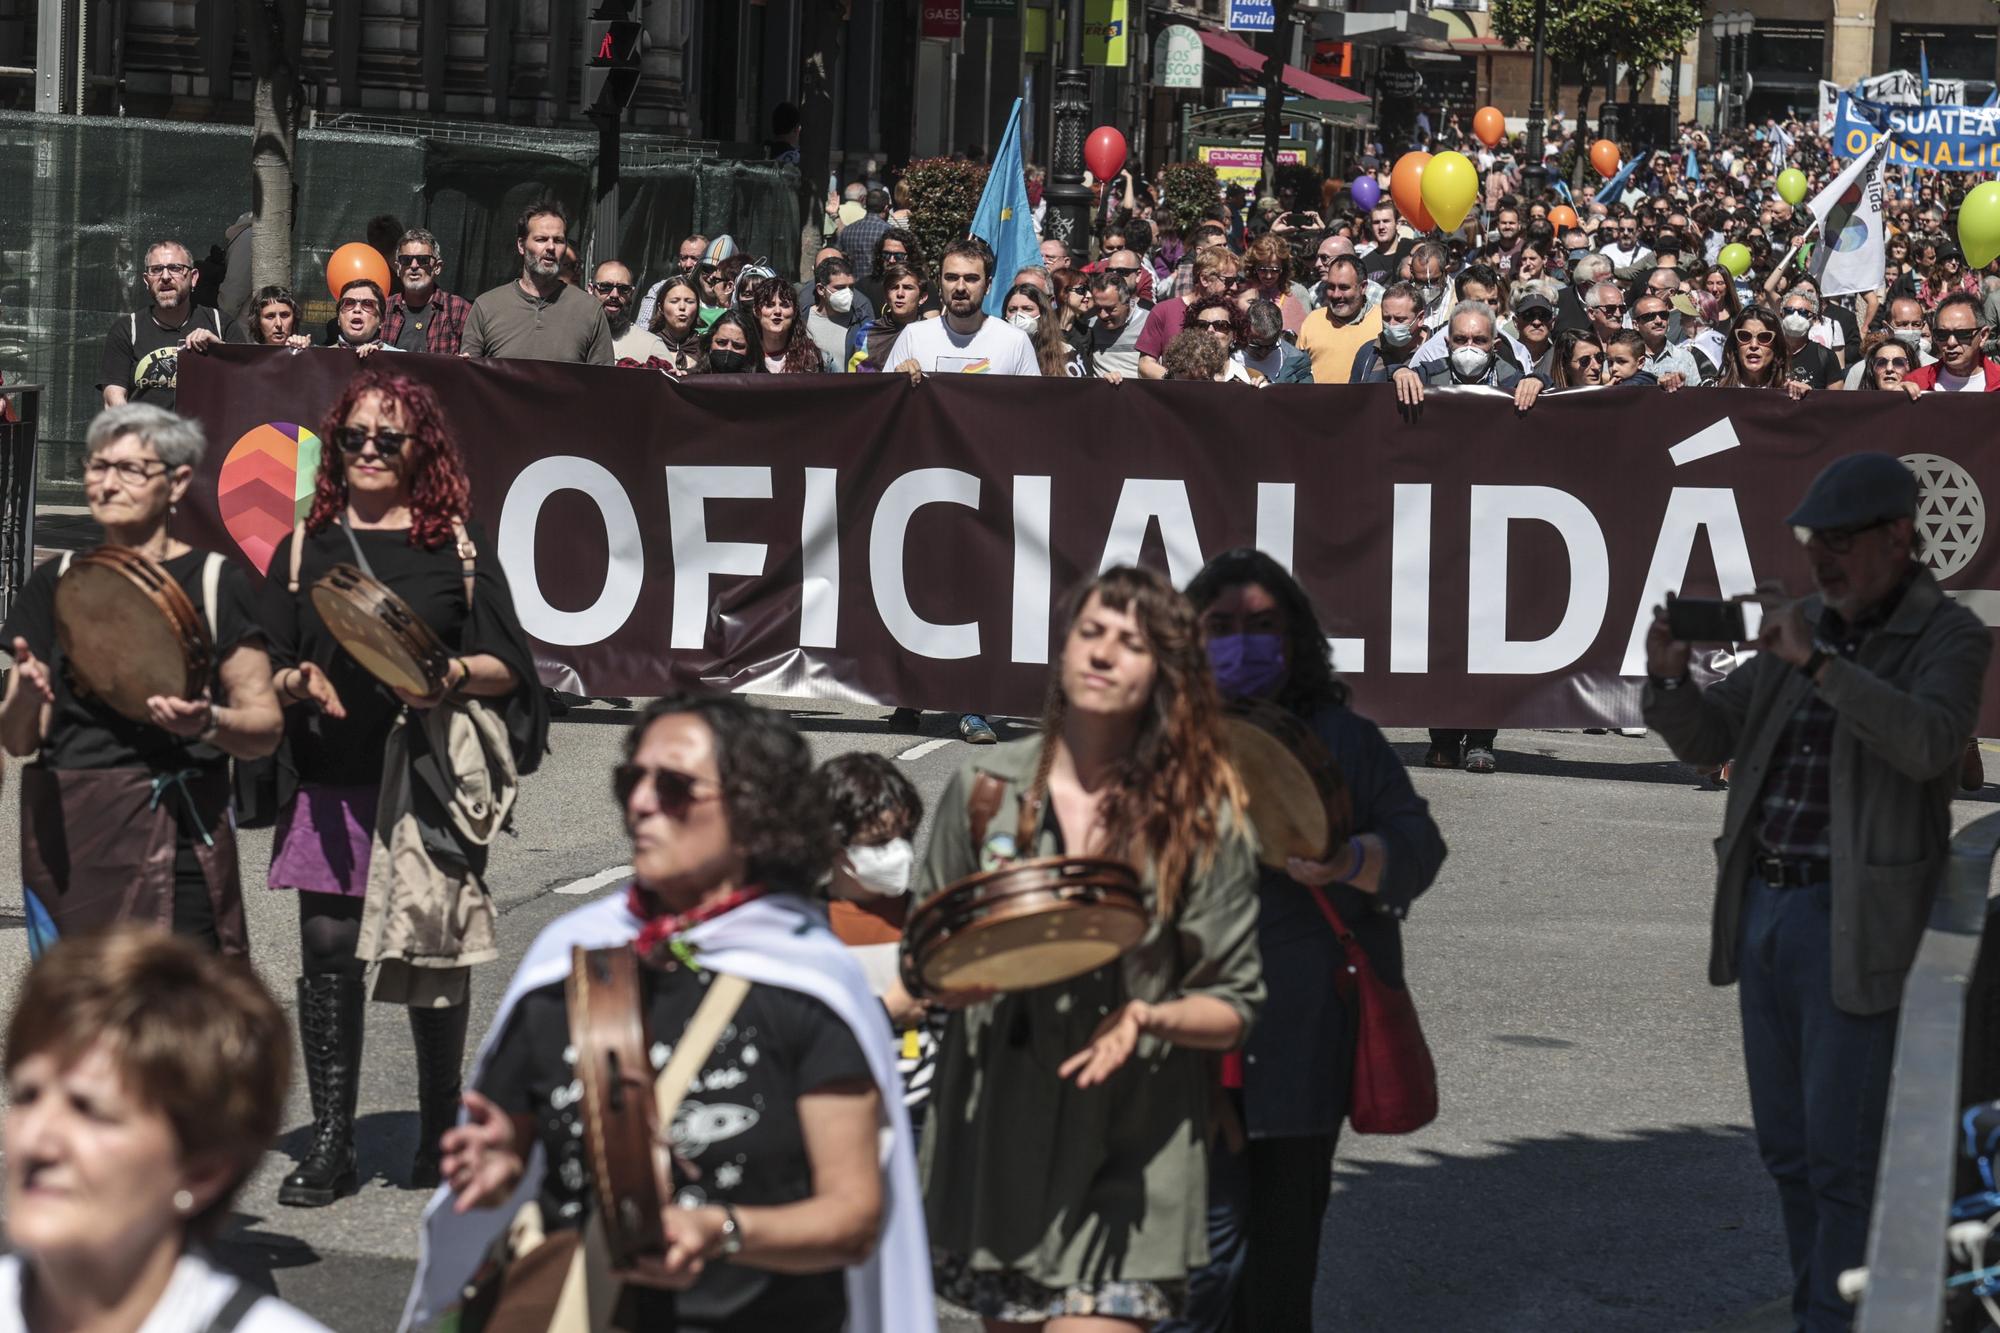 Multitudinaria manifestación por la oficialidad en Oviedo